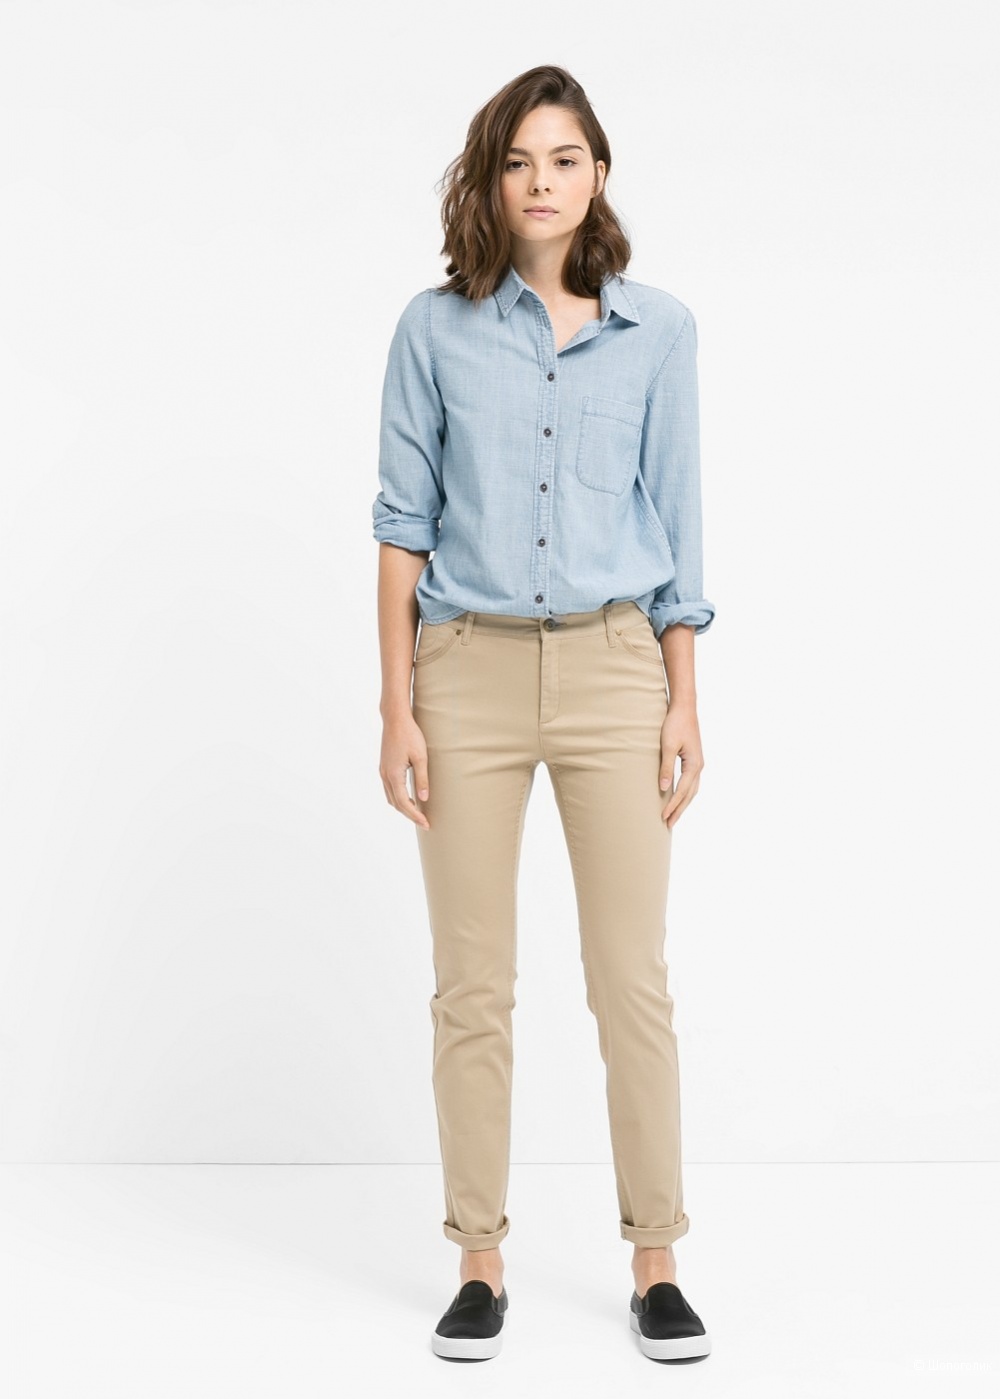 Бежевые брюки и голубая рубашка женская фото